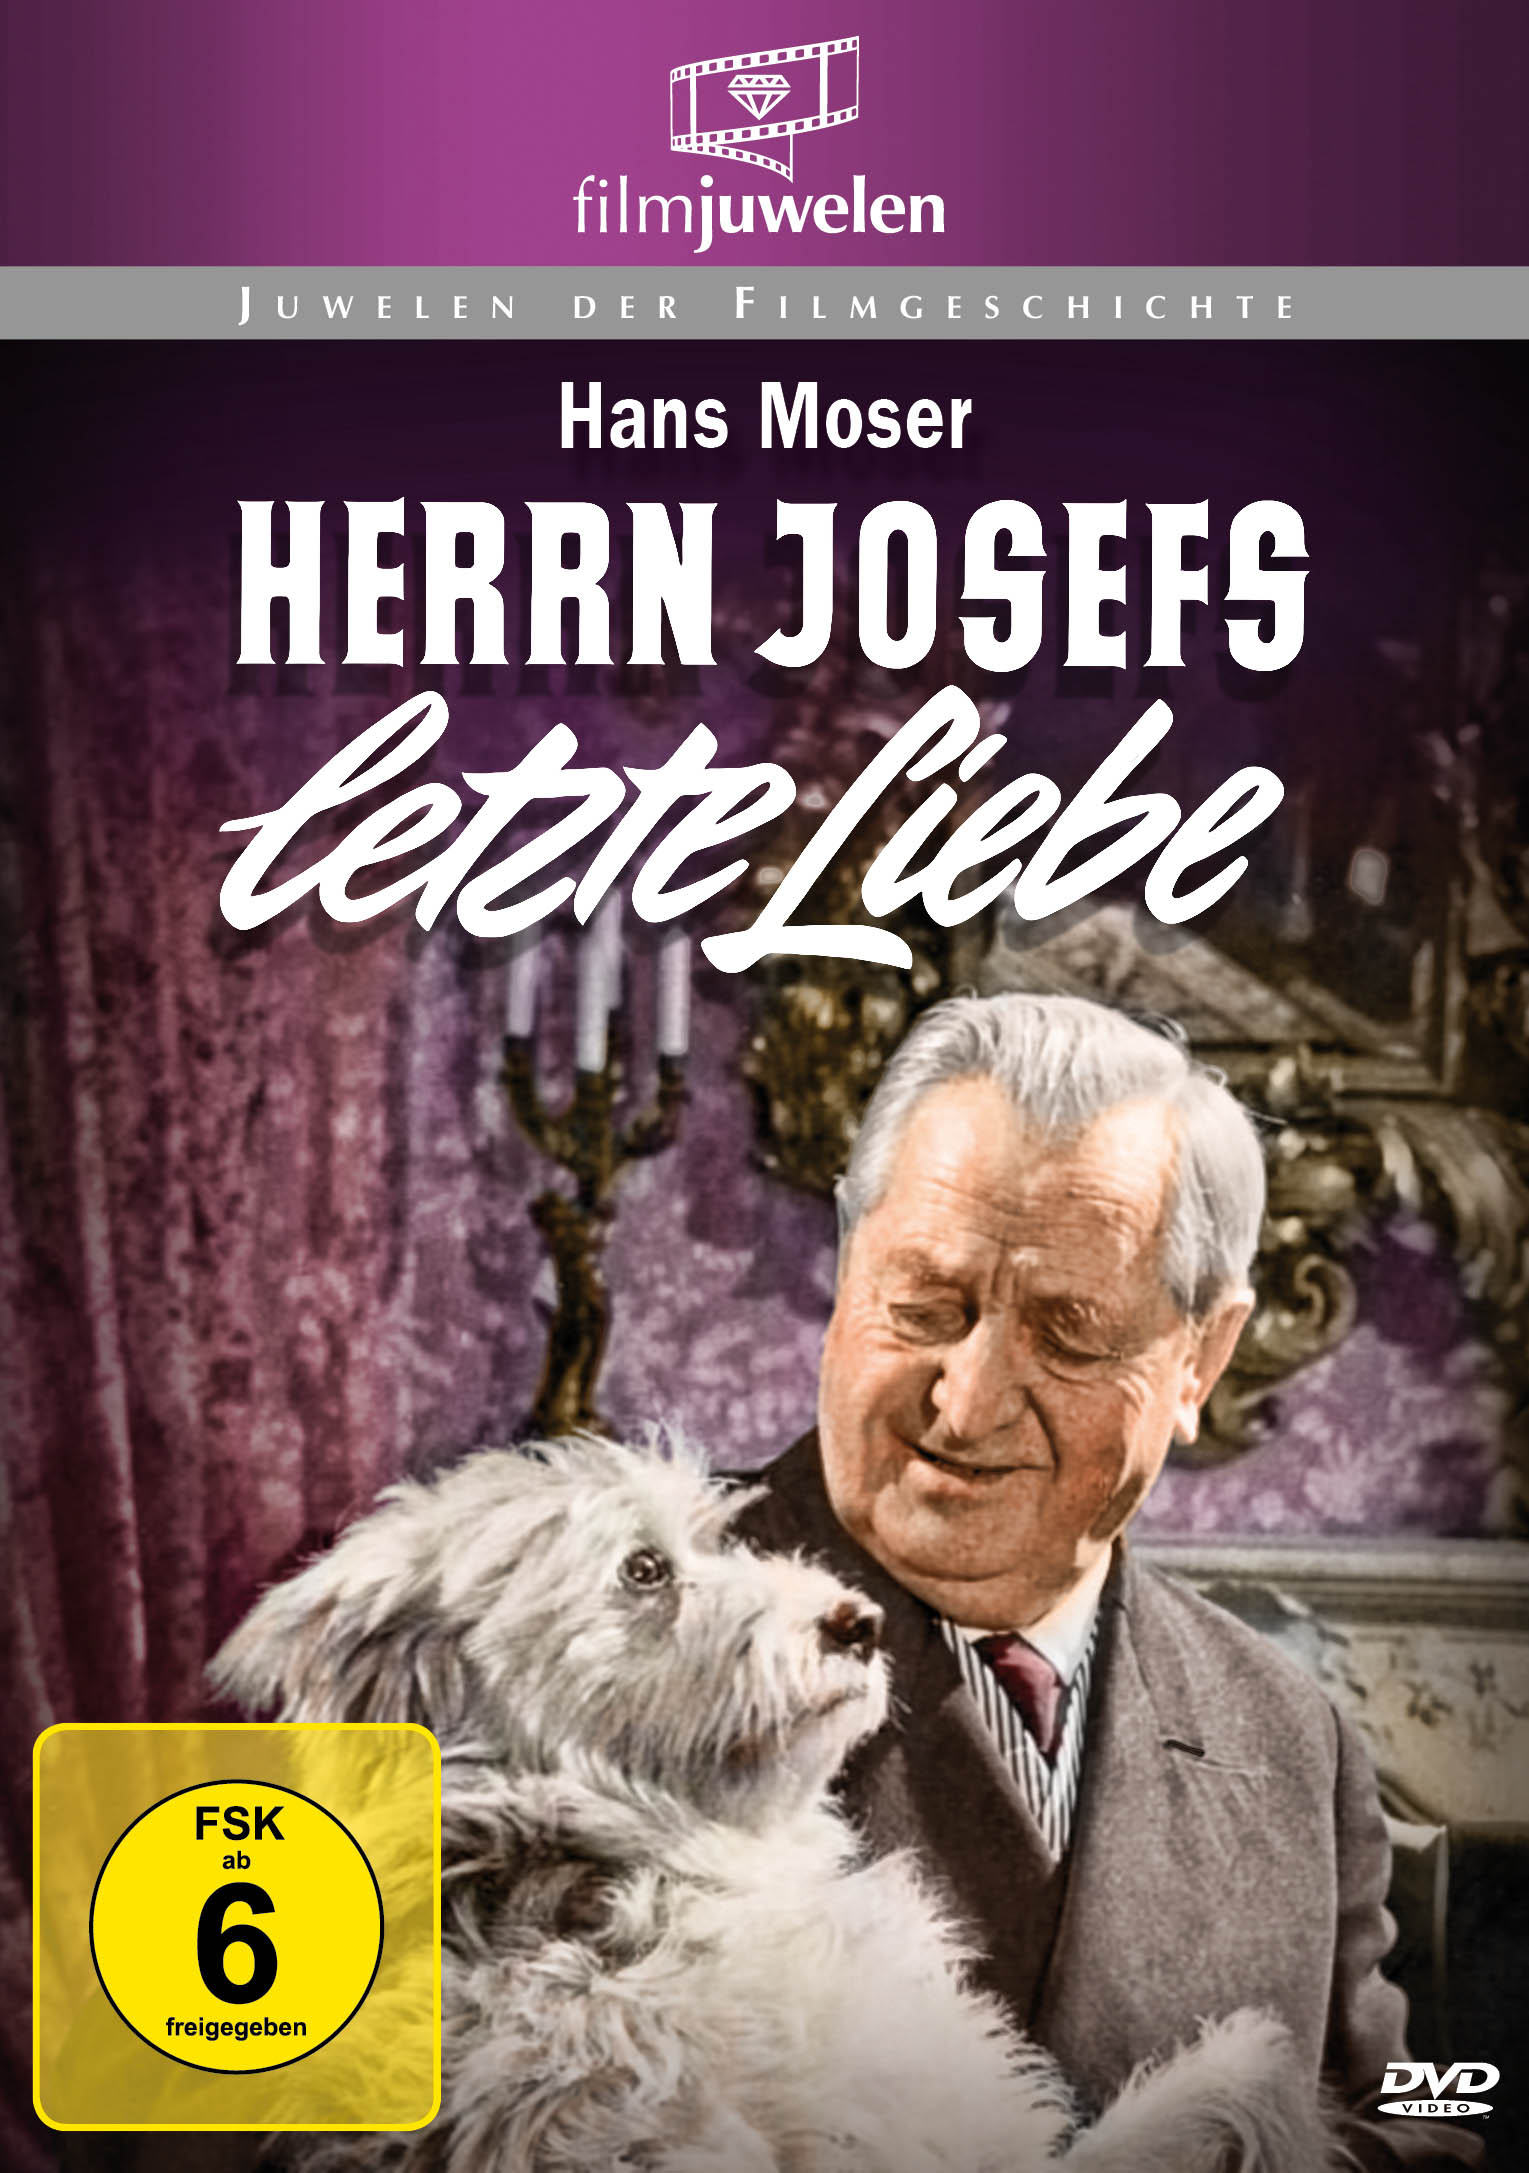 Herrn letzte Josefs DVD Liebe